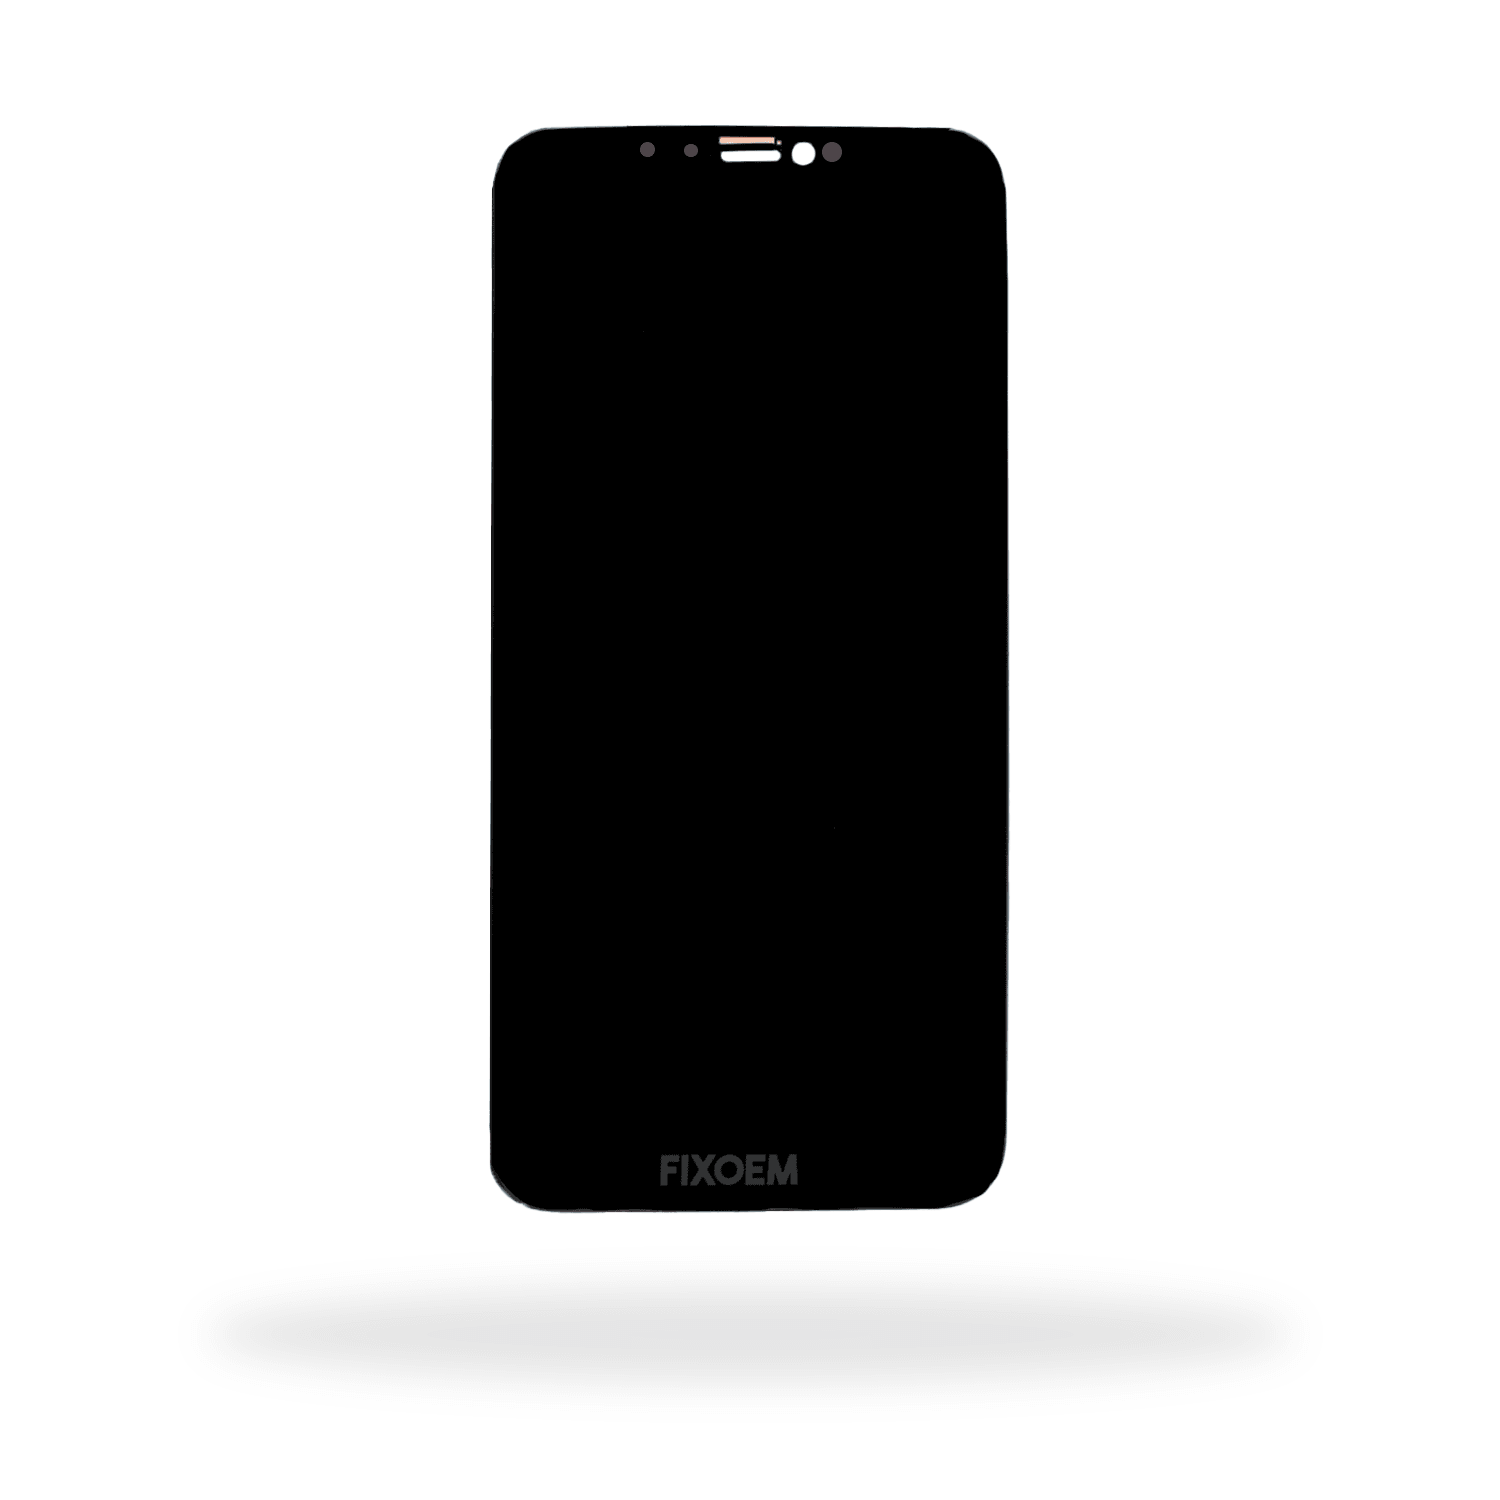 Display Iphone Xs Max A1921 A2101 A2102 A2104 a solo $ 340.00 Refaccion y puestos celulares, refurbish y microelectronica.- FixOEM